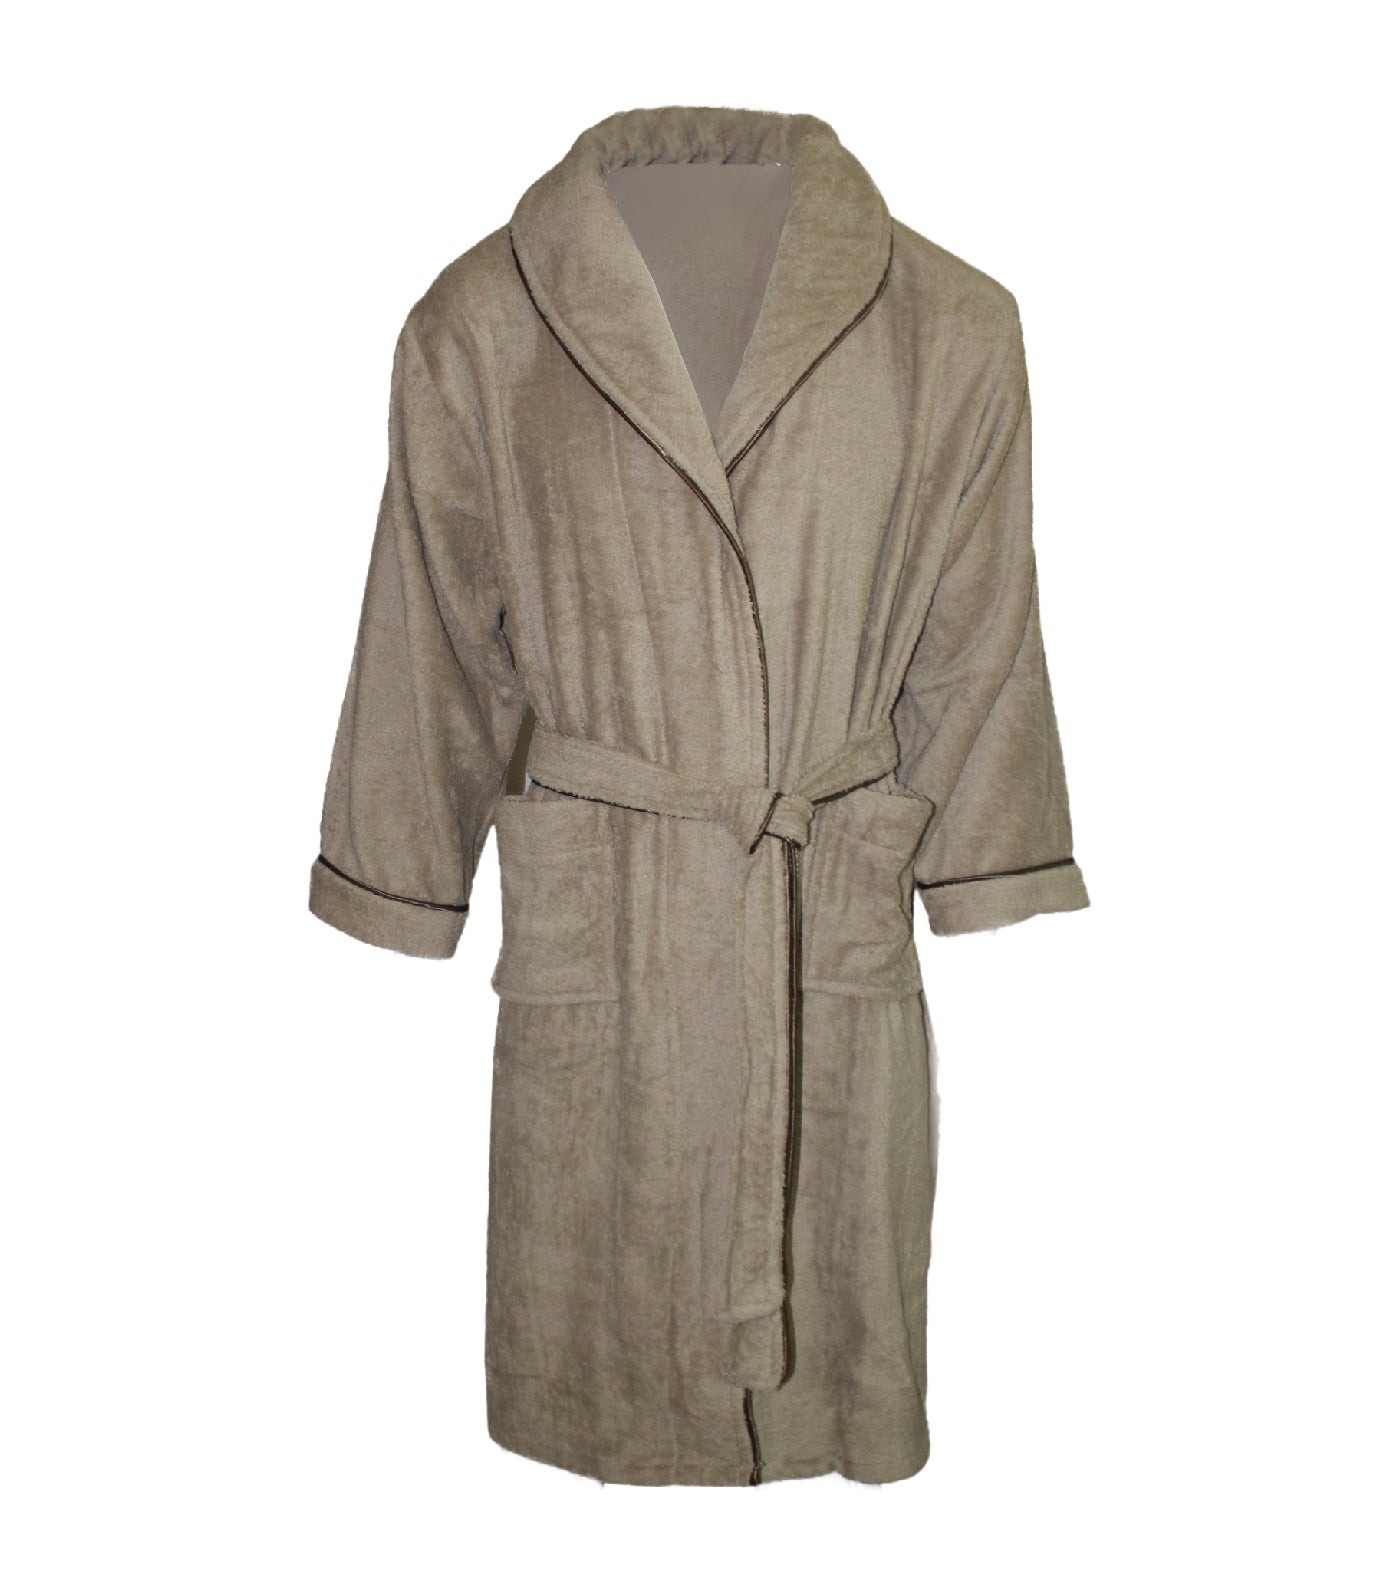 bloomsfield terry bathrobe - brown